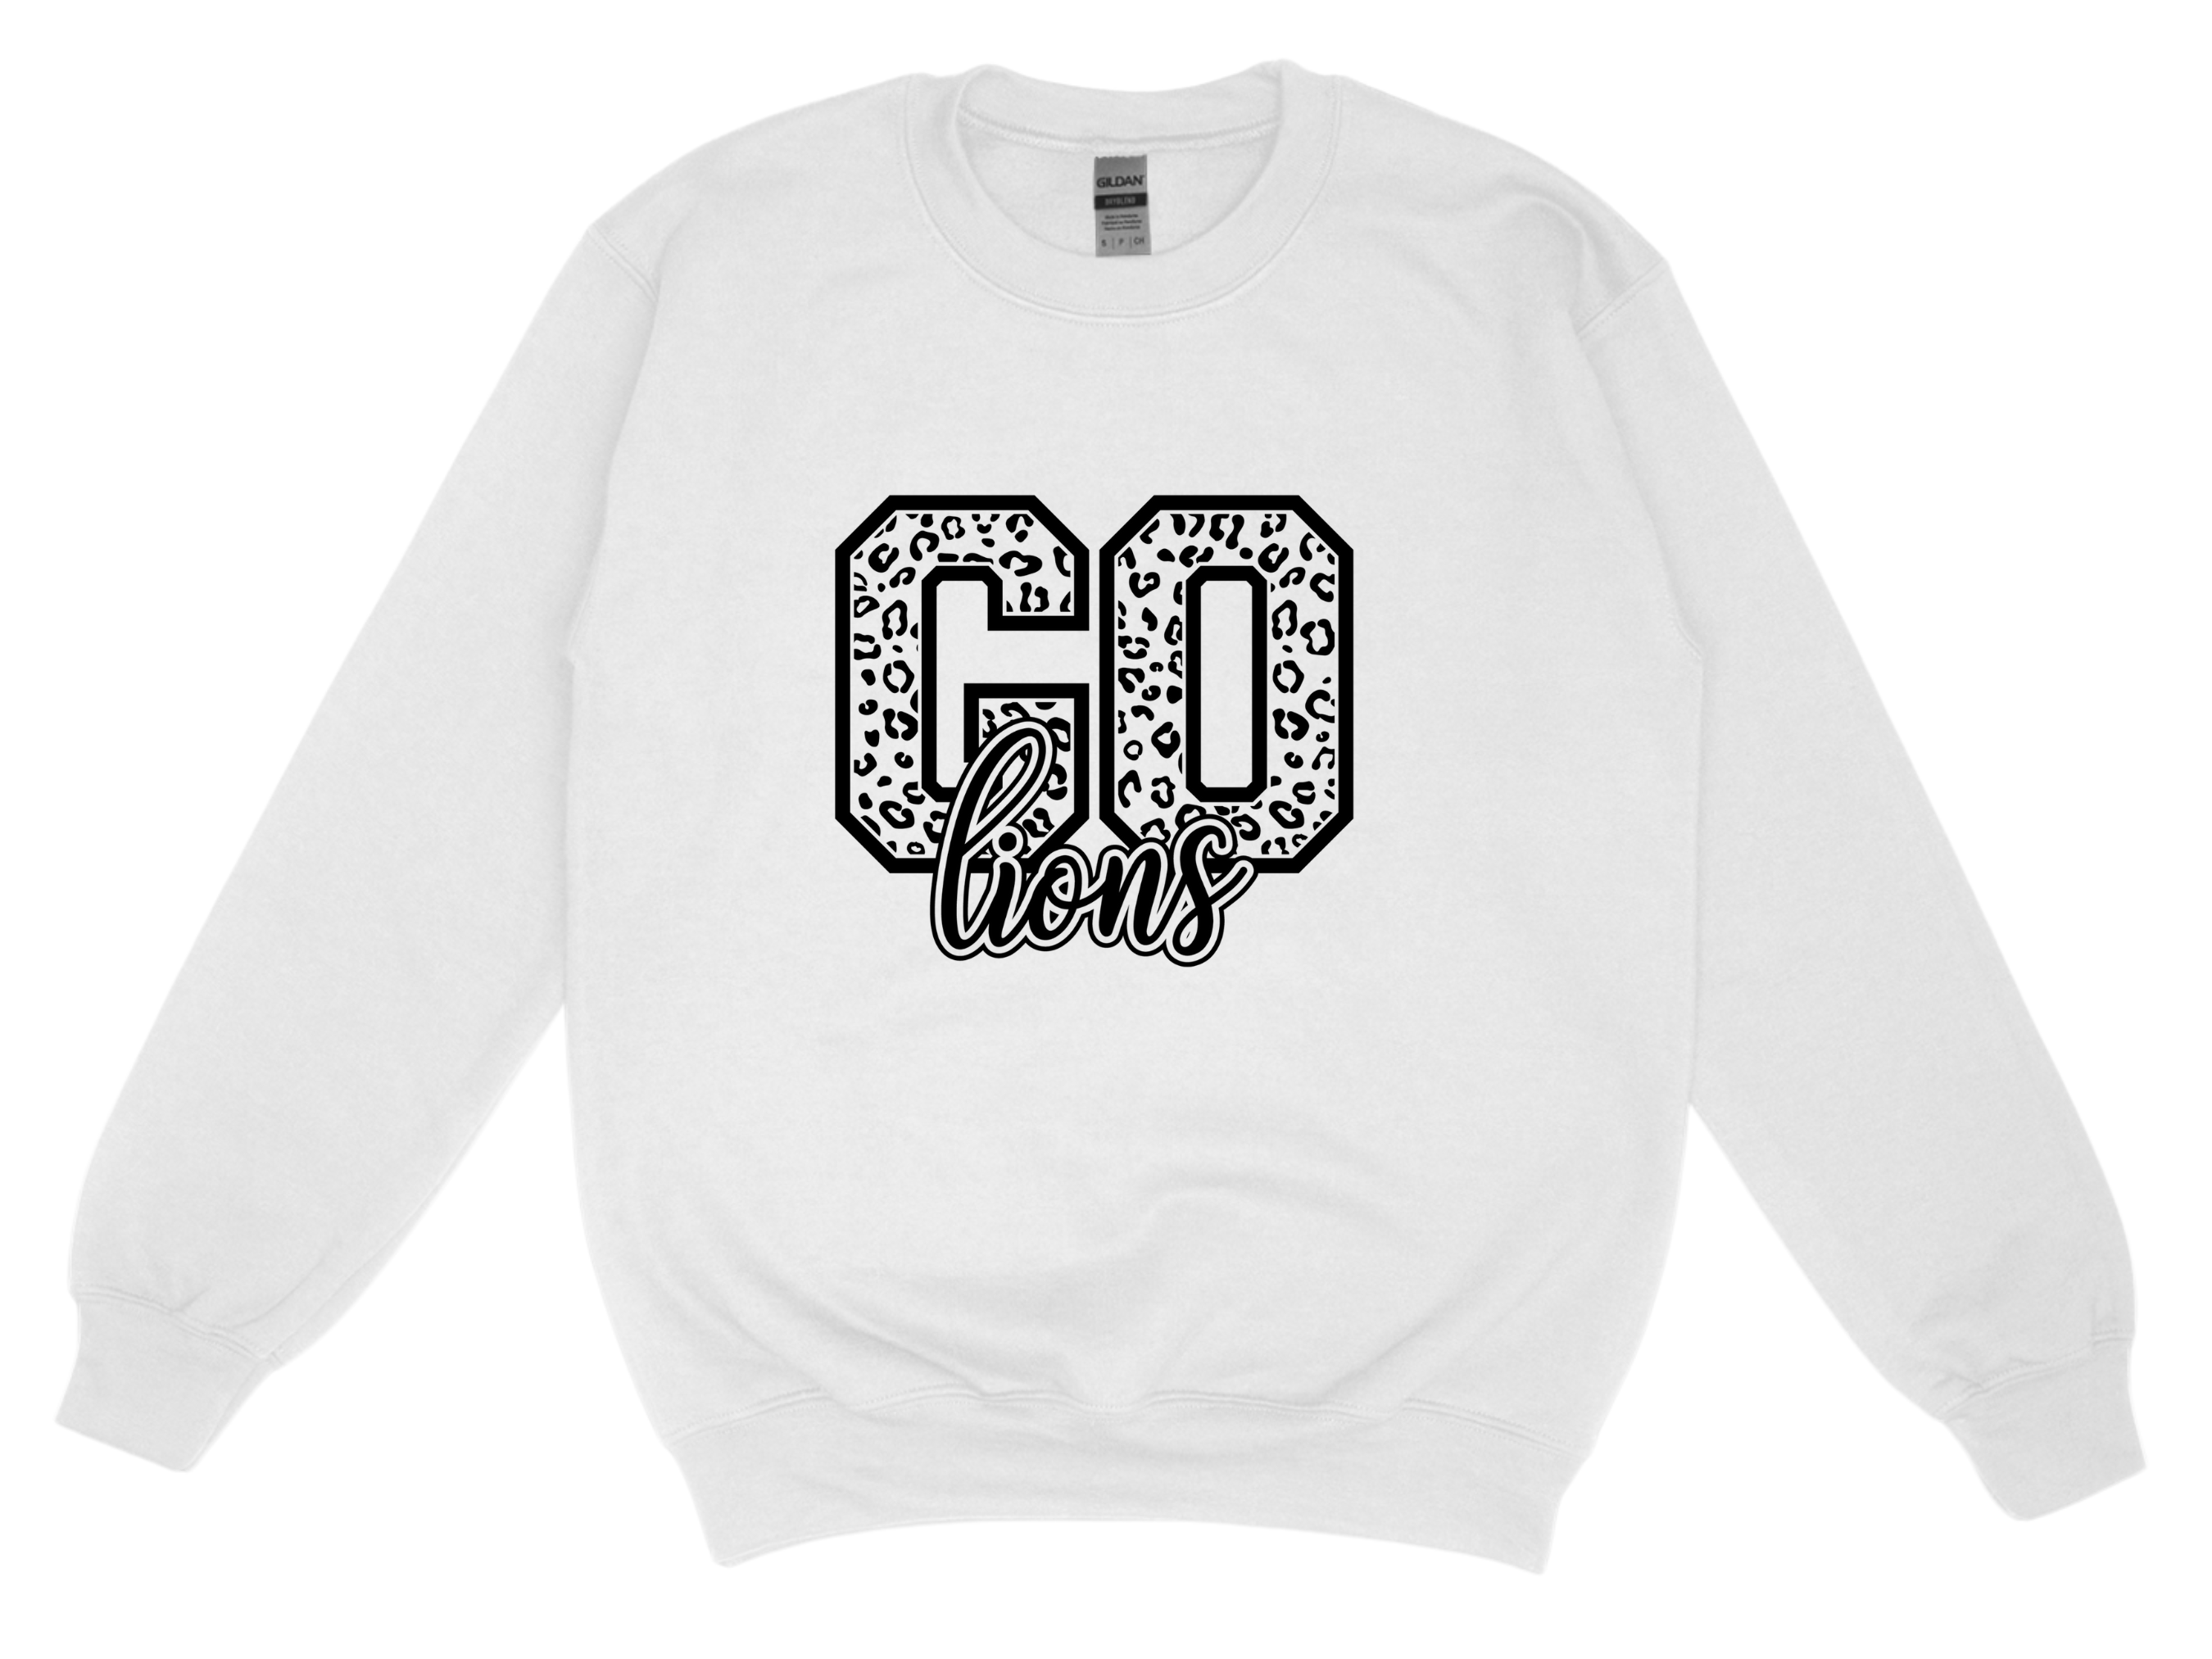 Go Lions- White Sweatshirt Large Image